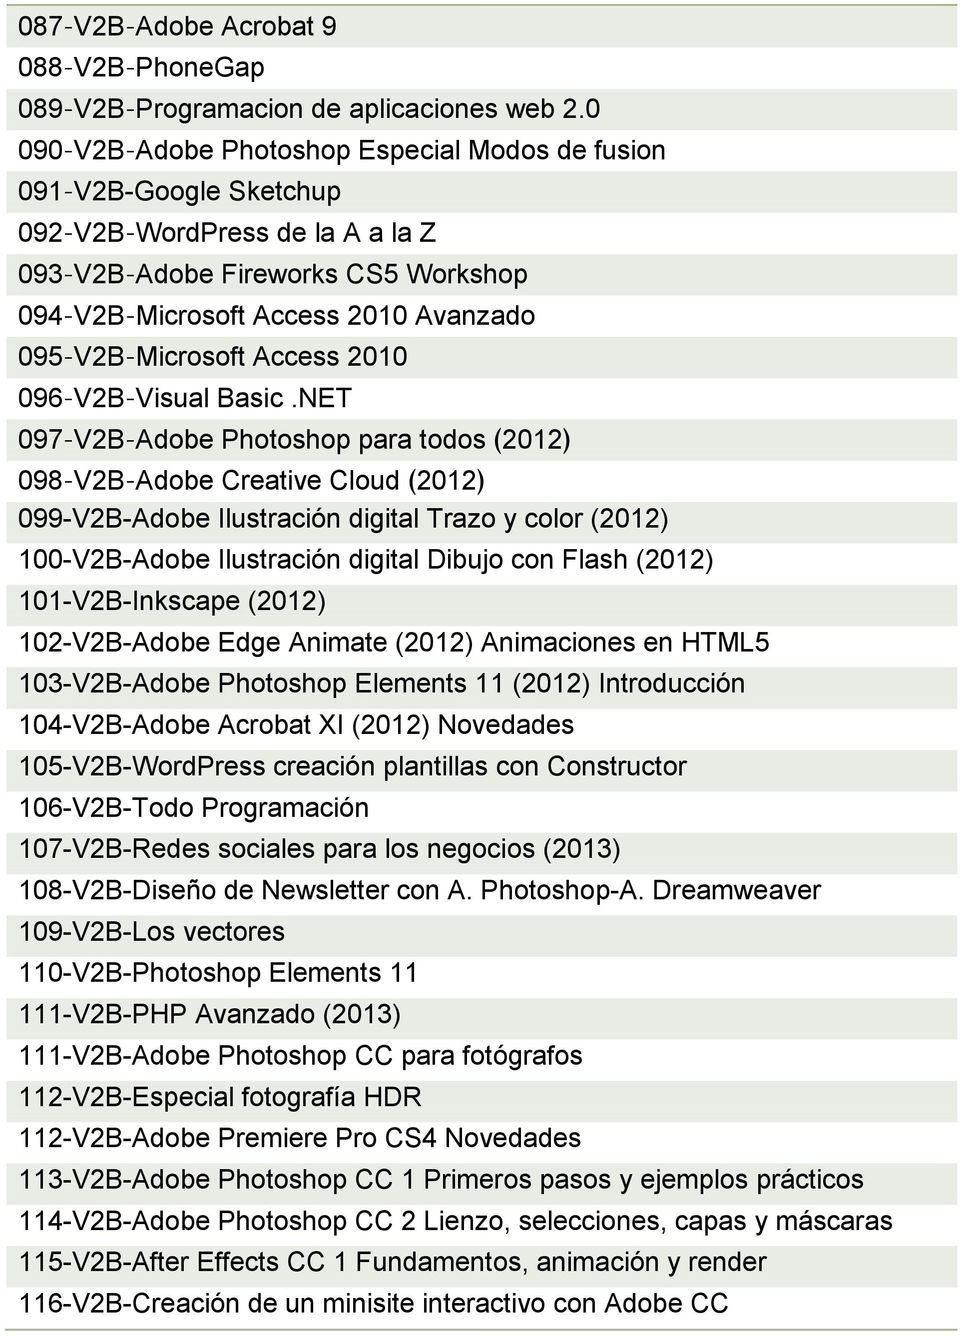 Microsoft Access 2010 096 V2B Visual Basic.